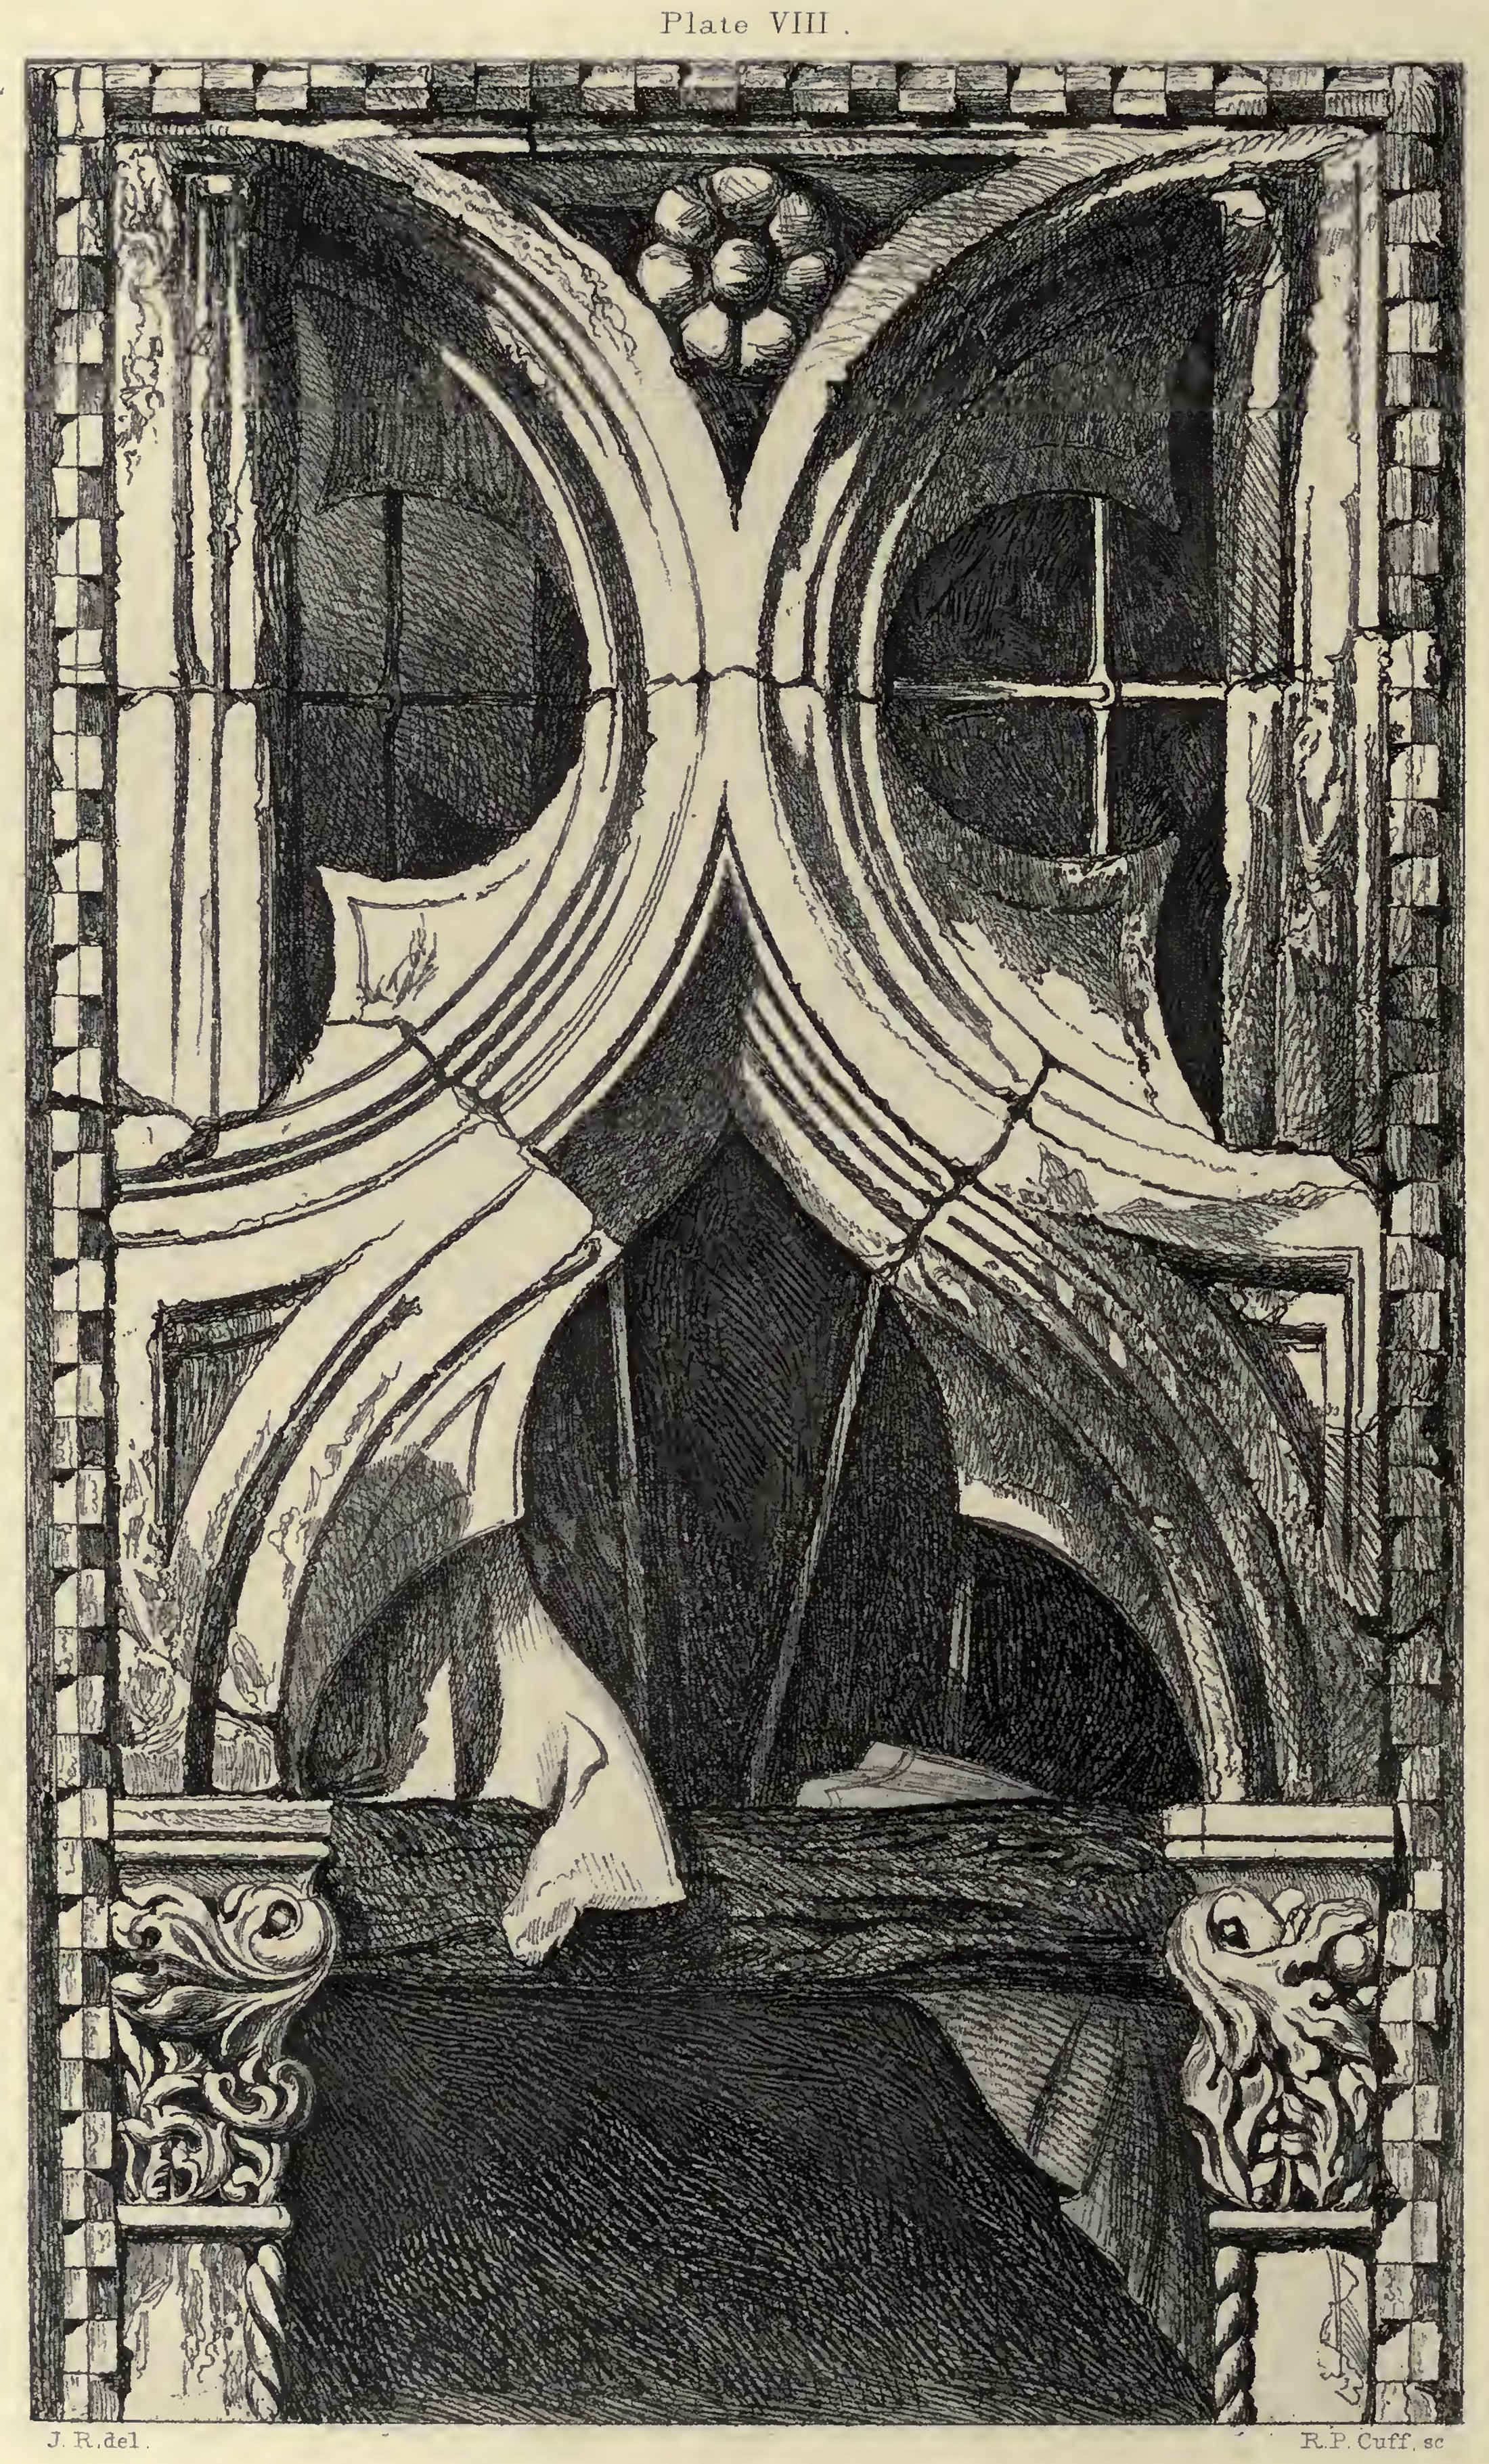 VIII. Window from the Ca’ Foscari, Venice